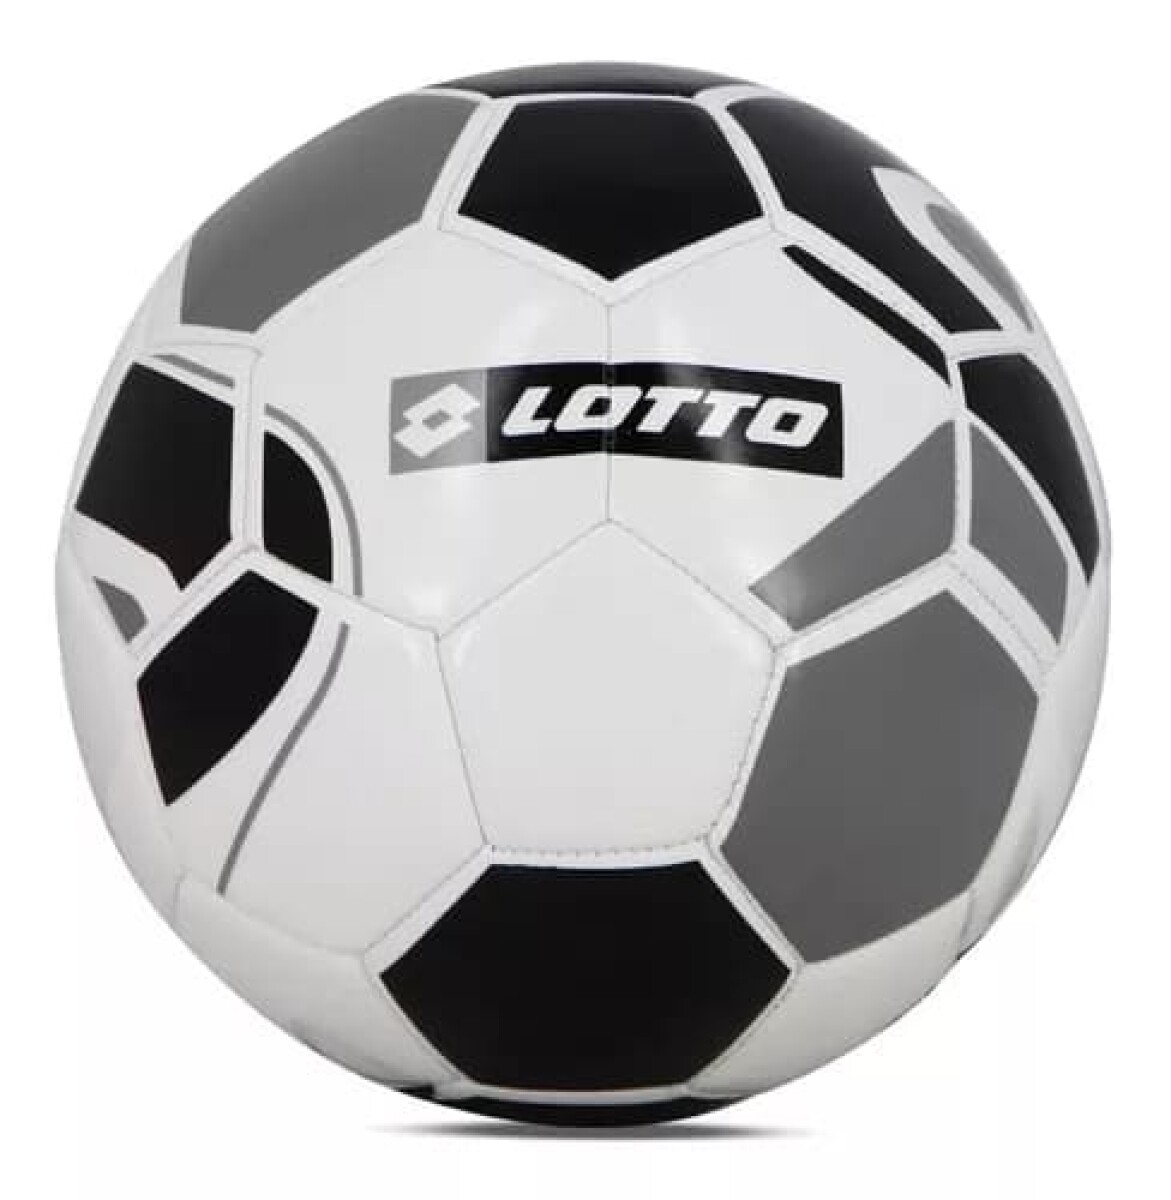 Pelota Lotto Futbol Nº5 Blanca/Negra - S/C 